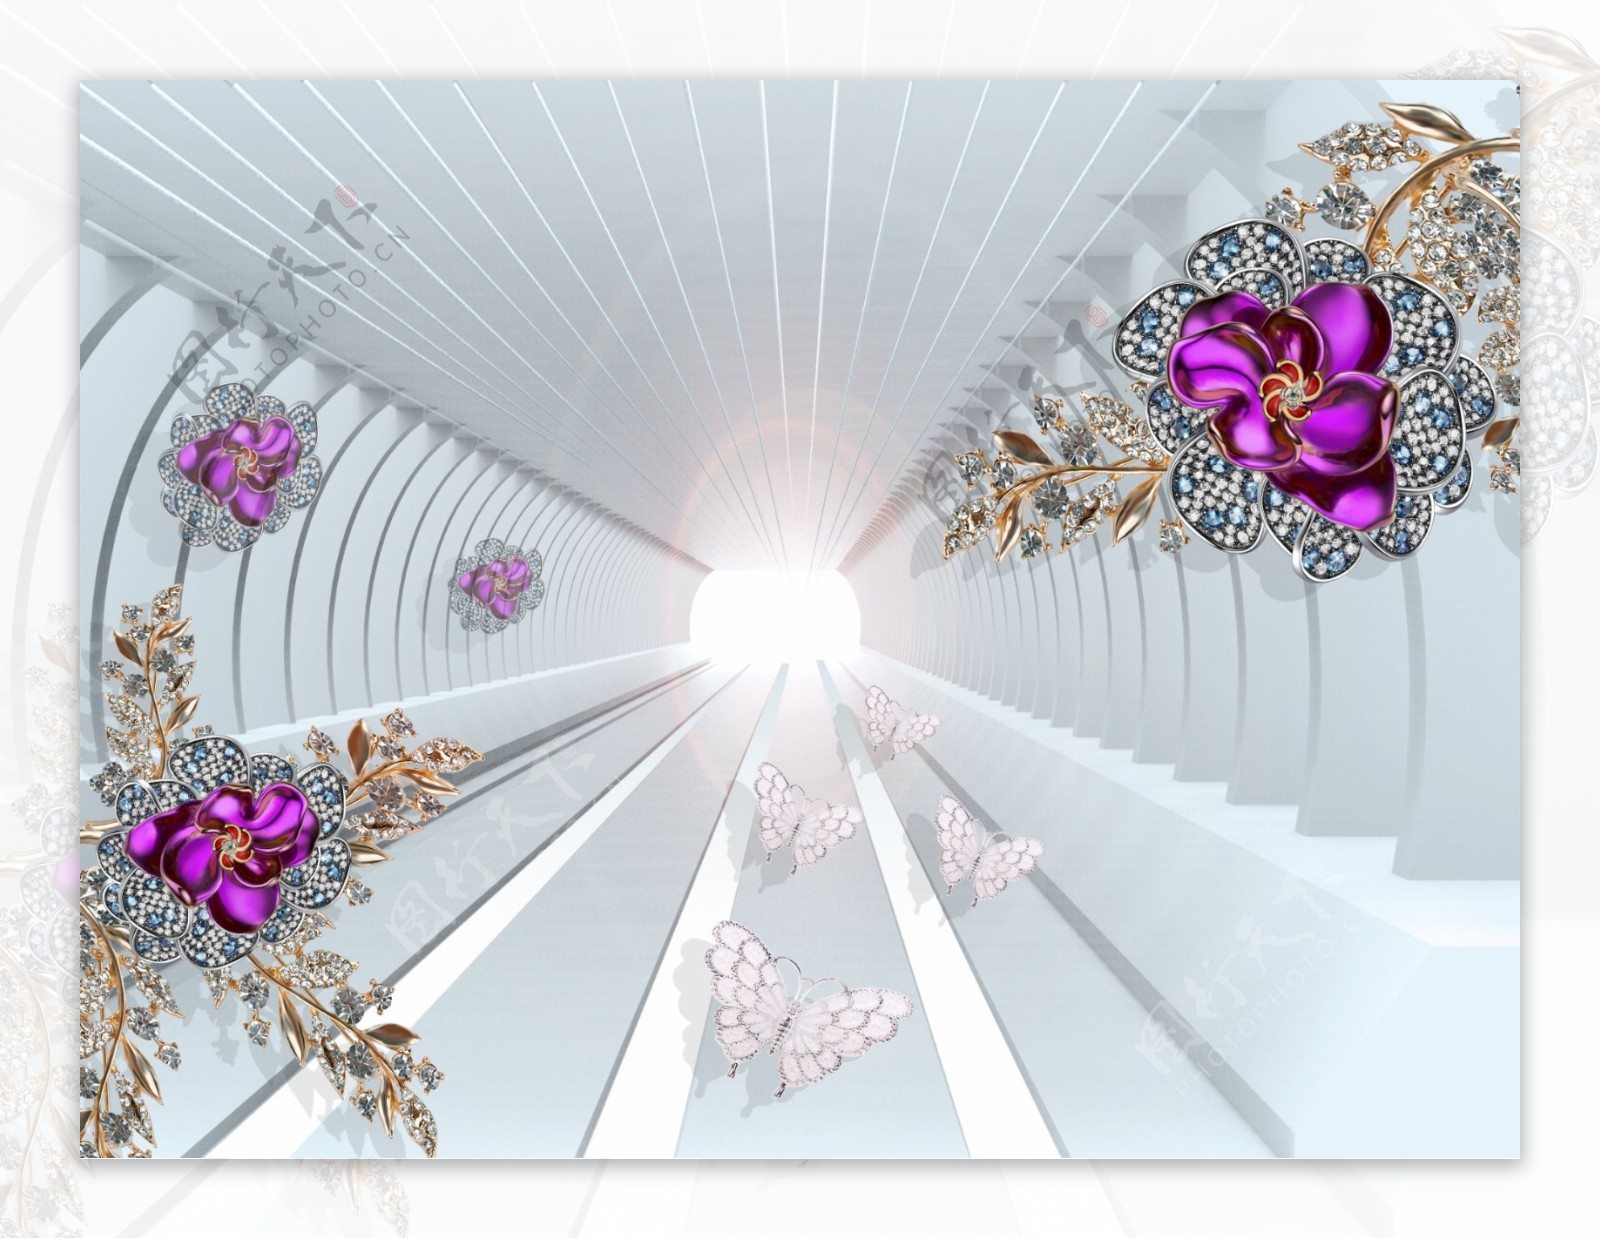 3D立体浮雕珠宝花朵背景墙